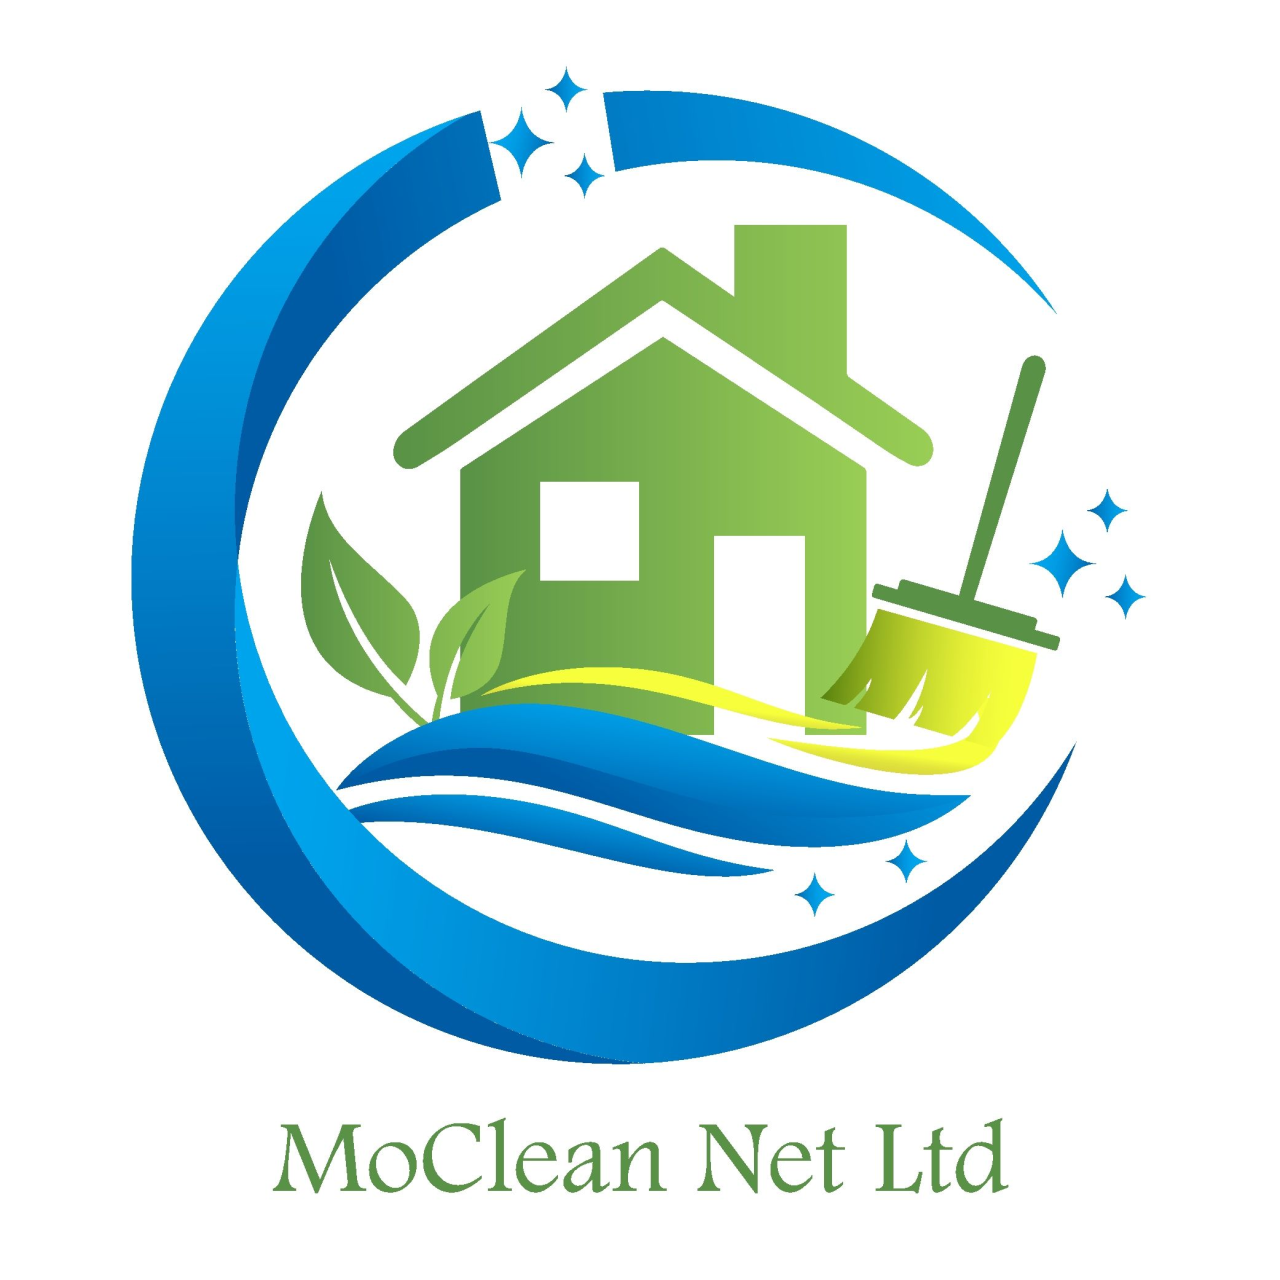 Moclean Net Ltd 's logo